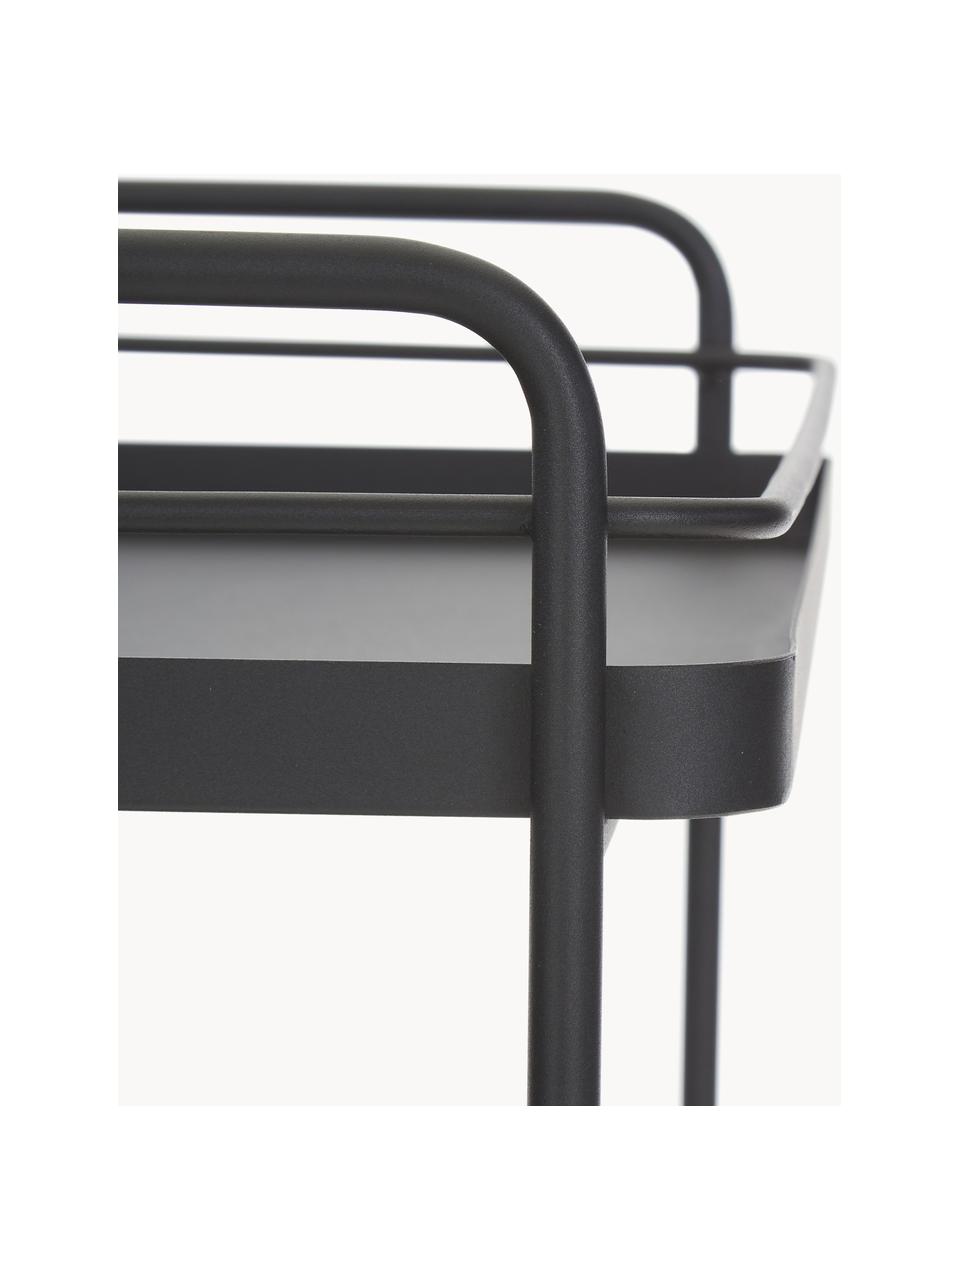 Wózek barowy z metalu Barclay, Metal, chropowaty, lakierowany, Czarny, S 62 x W 79 cm